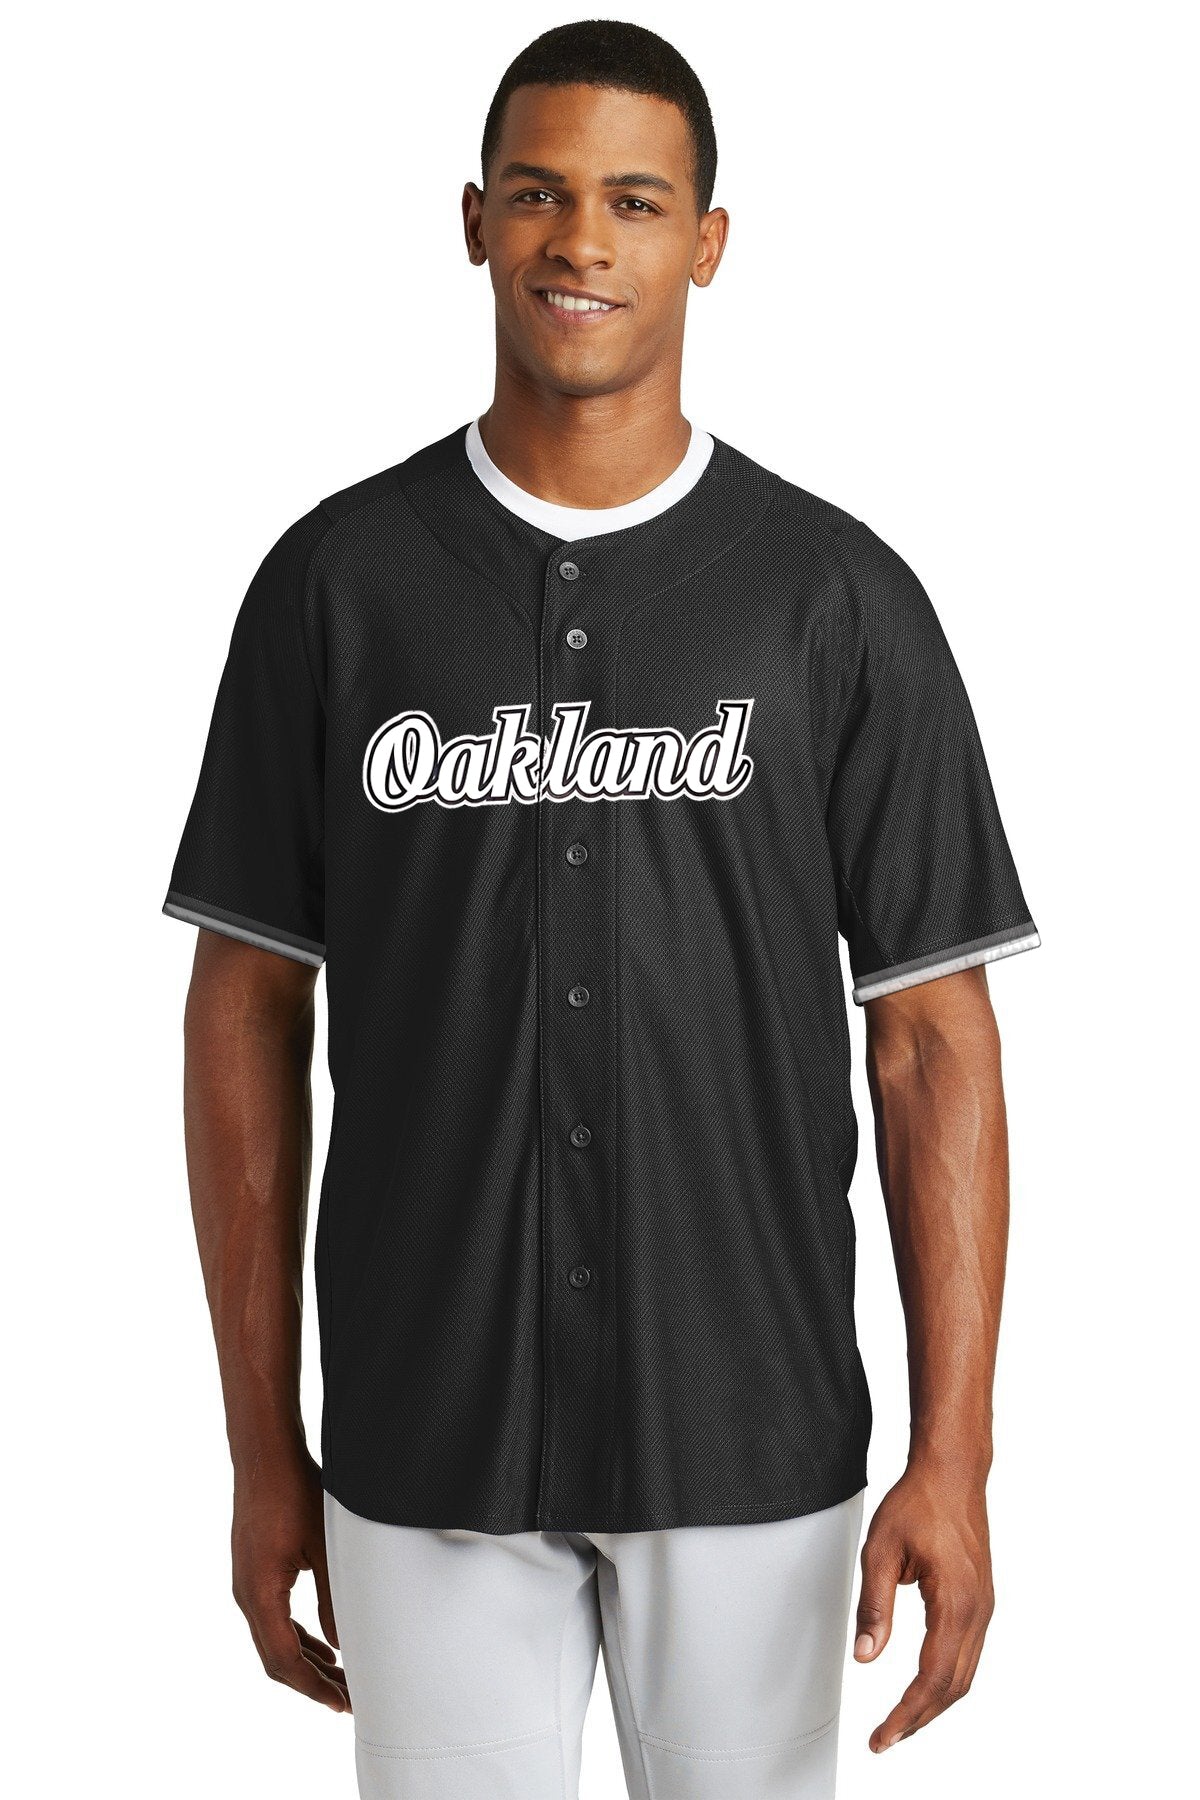 Oakland Baseball Jersey